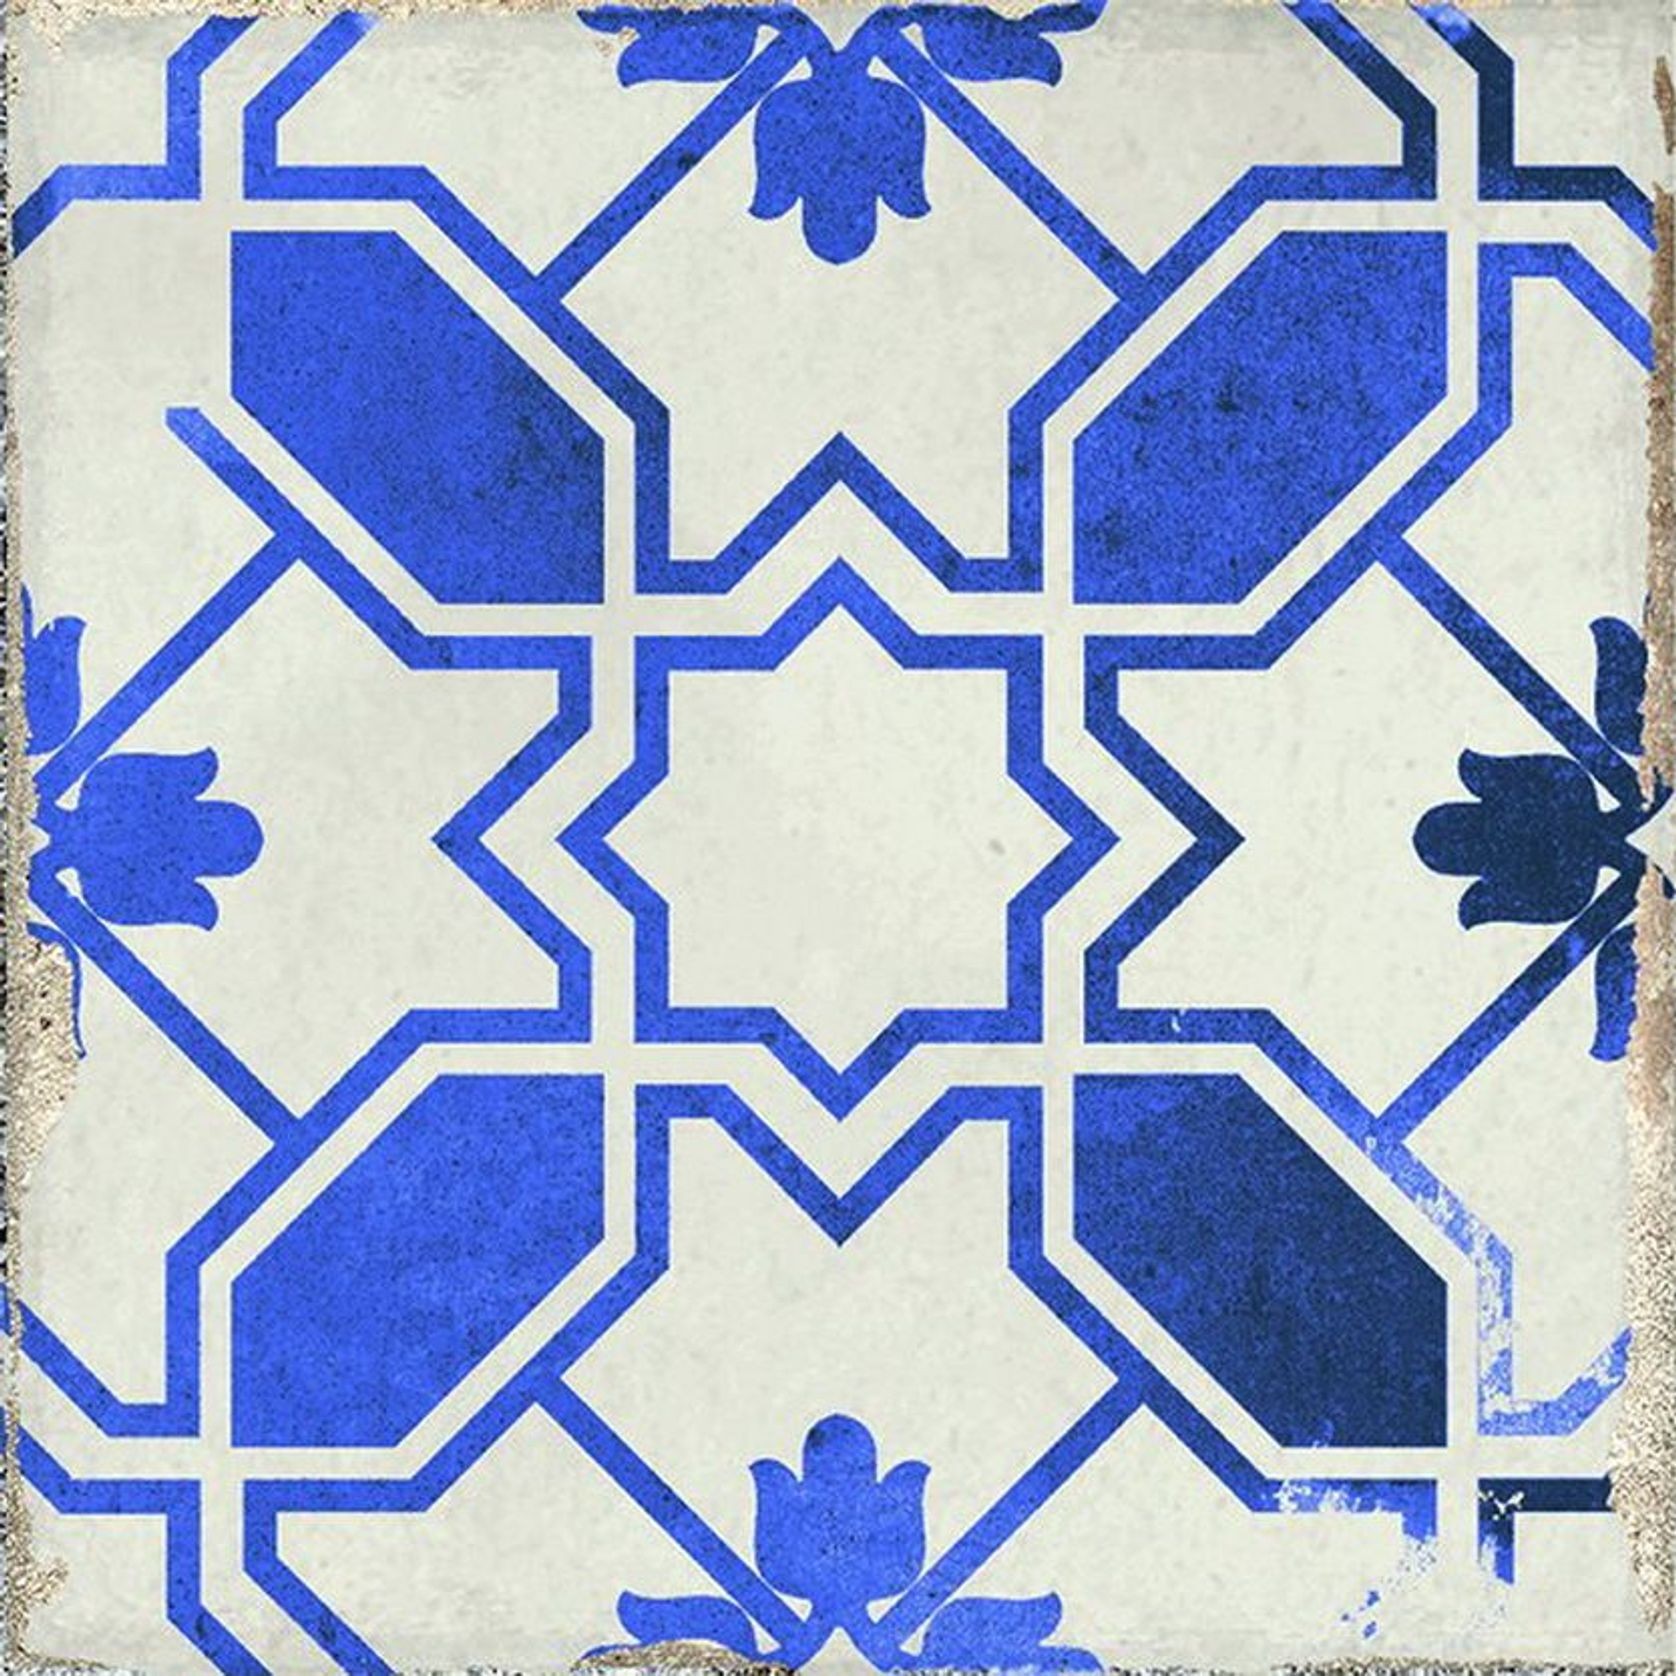 Village Caleta Blue Floor & Wall Tiles gallery detail image